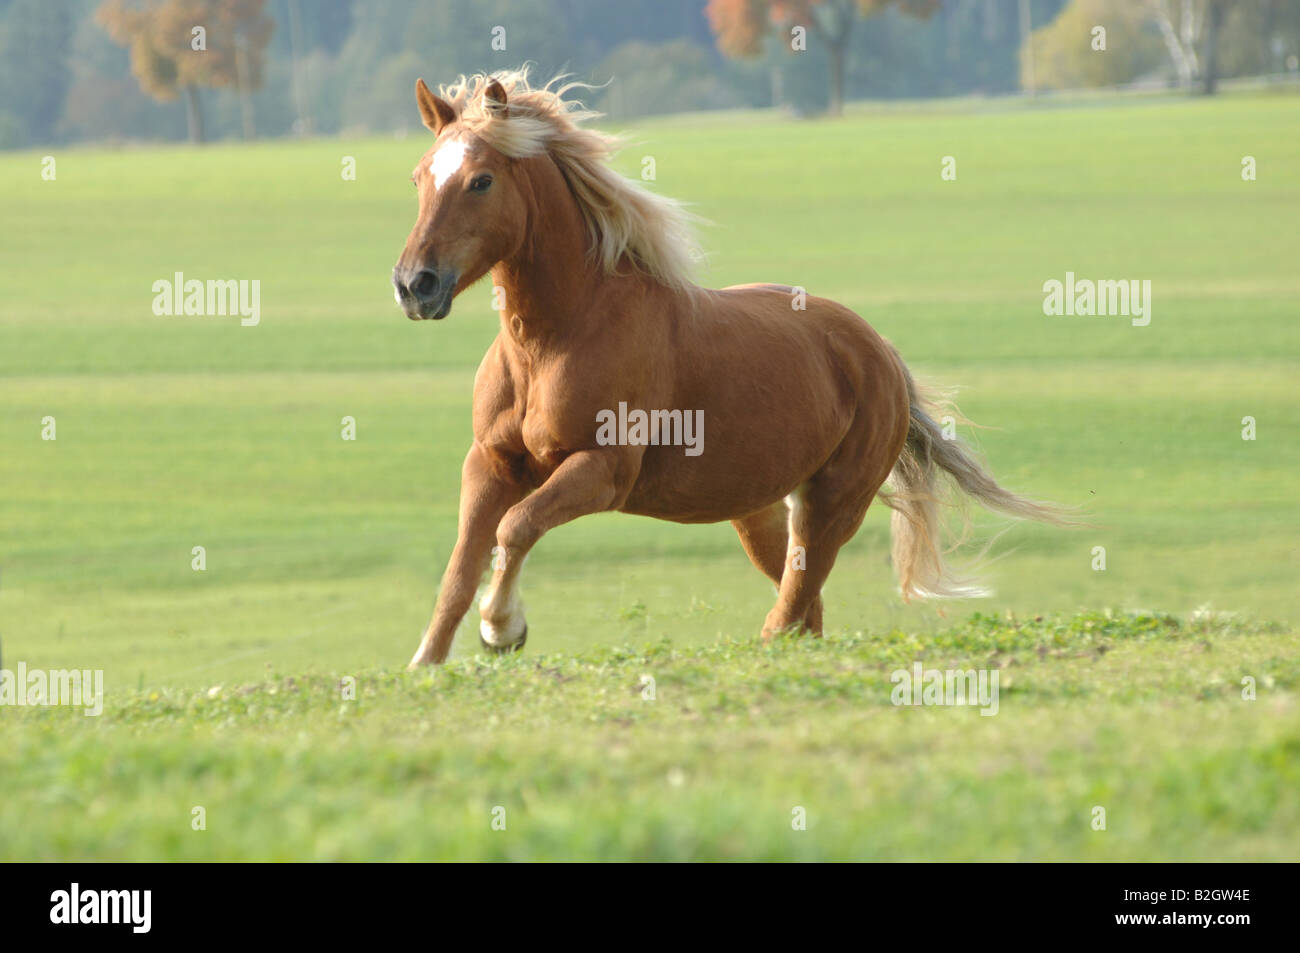 Haflinger cavalli di razza avelignese standard salice di pascolo Foto Stock